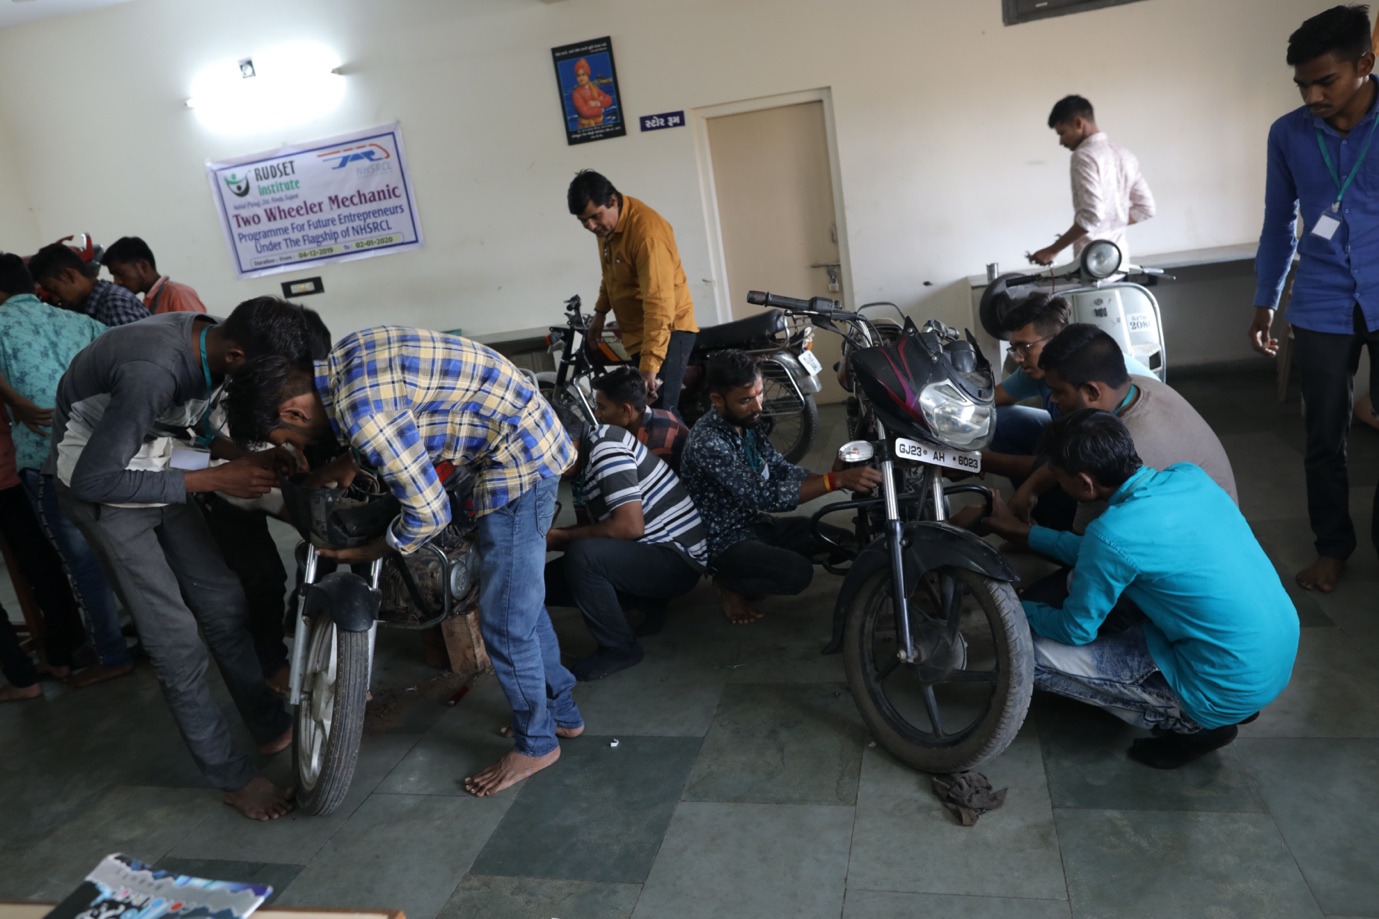 ખેડા (ગુજરાત) માં ટૂ વ્હીલર મિકેનિકની તાલીમ લઈ રહેલા તાલીમાર્થીઓ